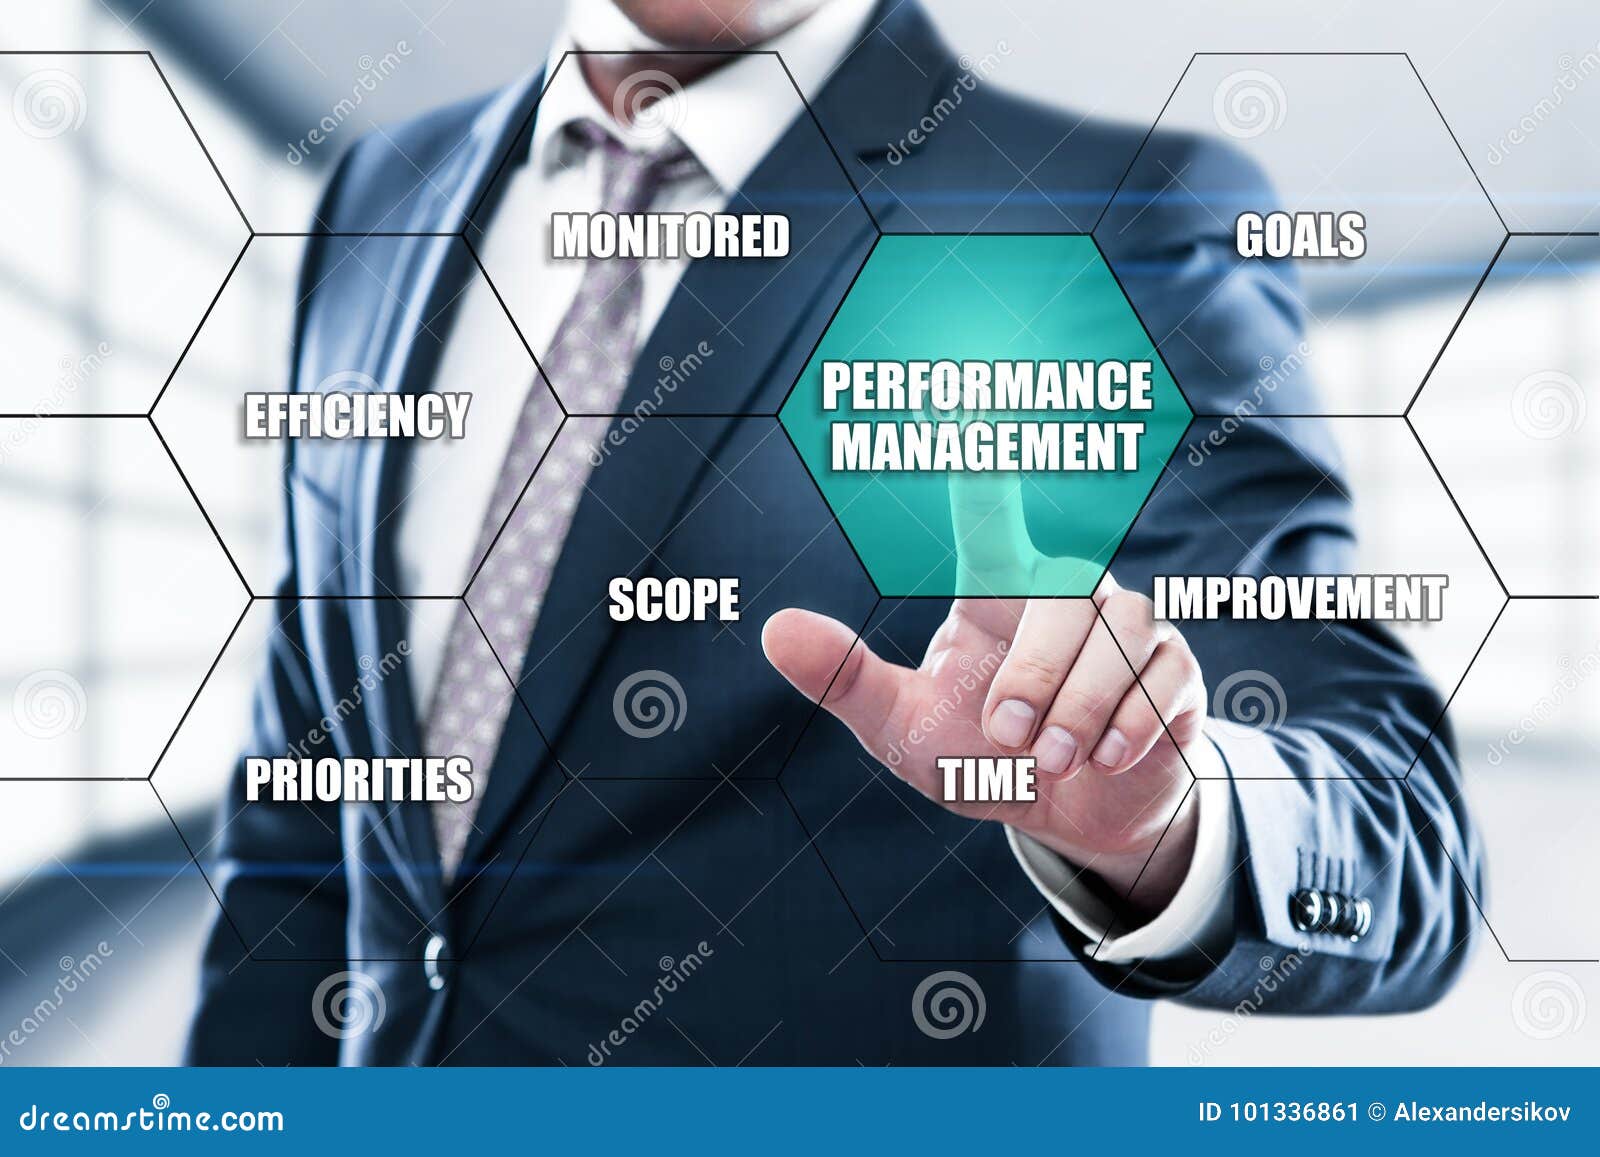 performance management efficiency impoverment concept